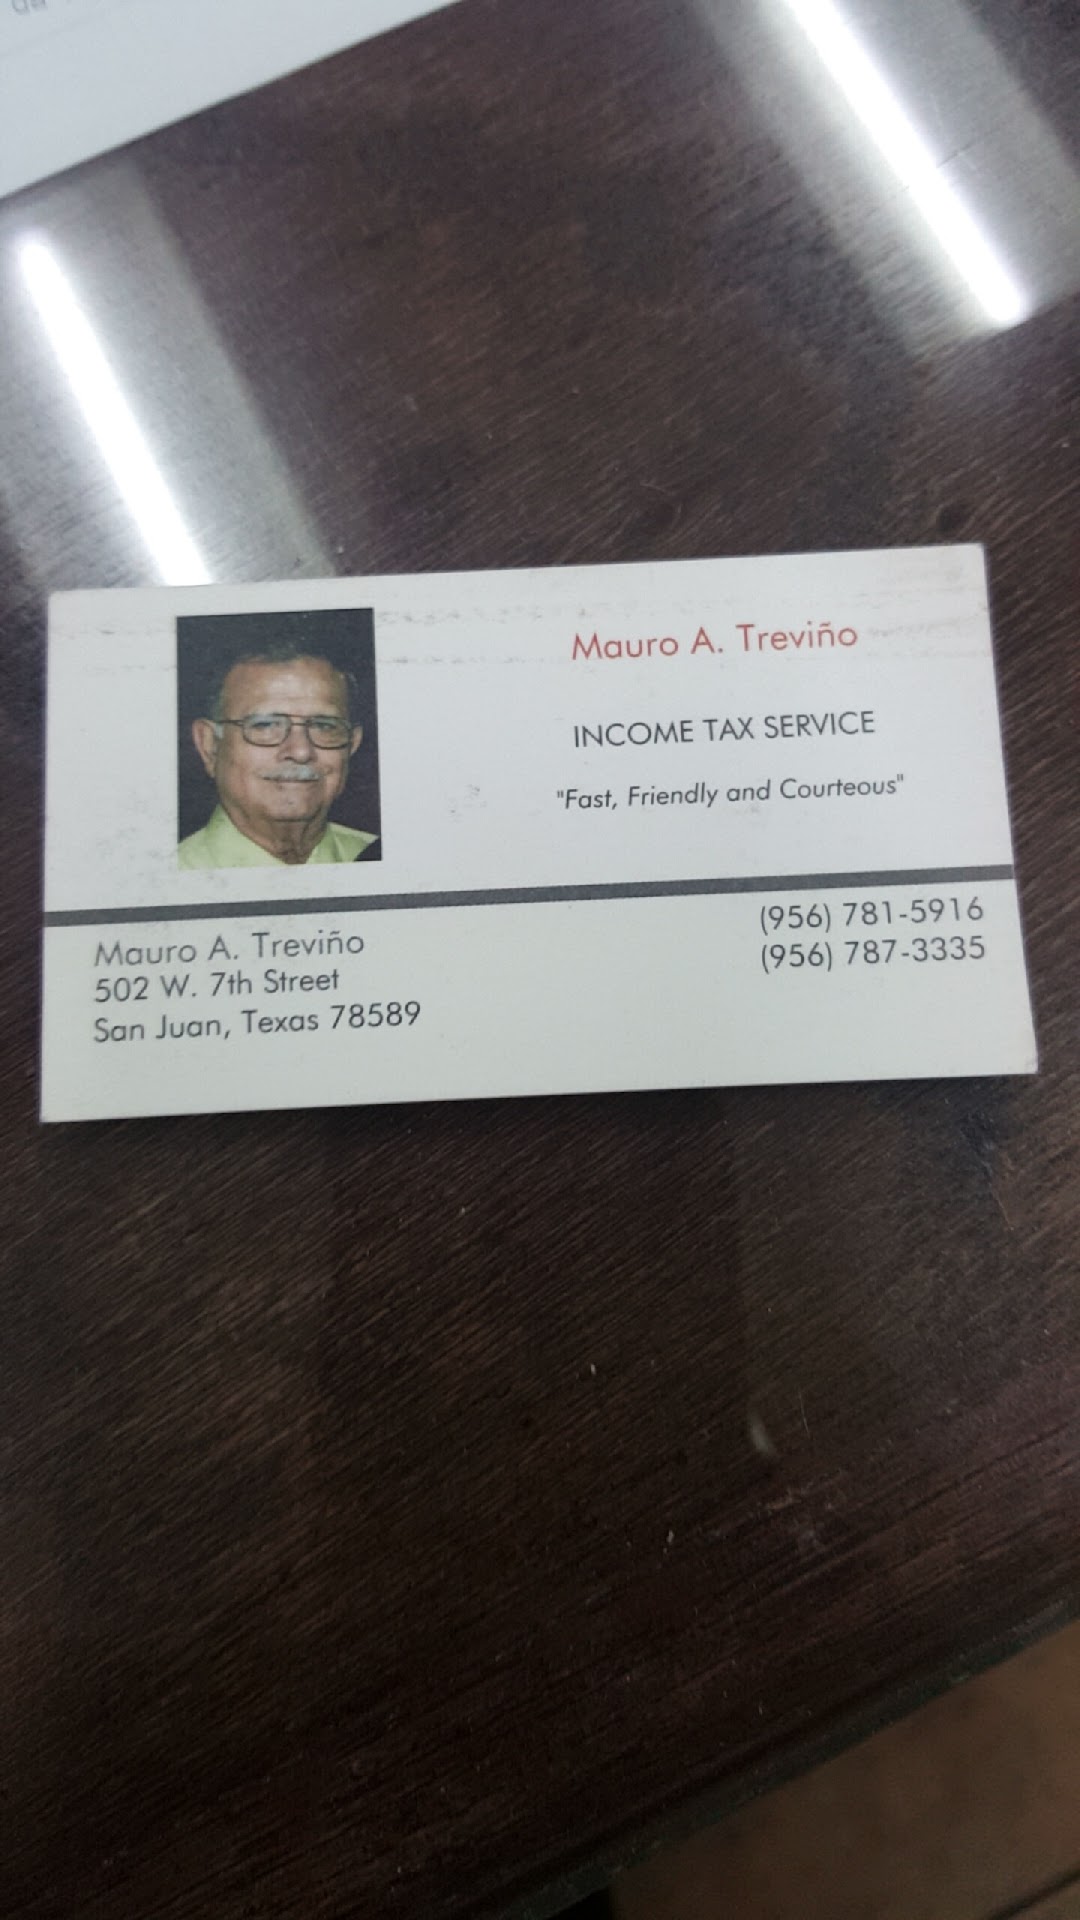 Mauro A. Trevio Income Tax Service